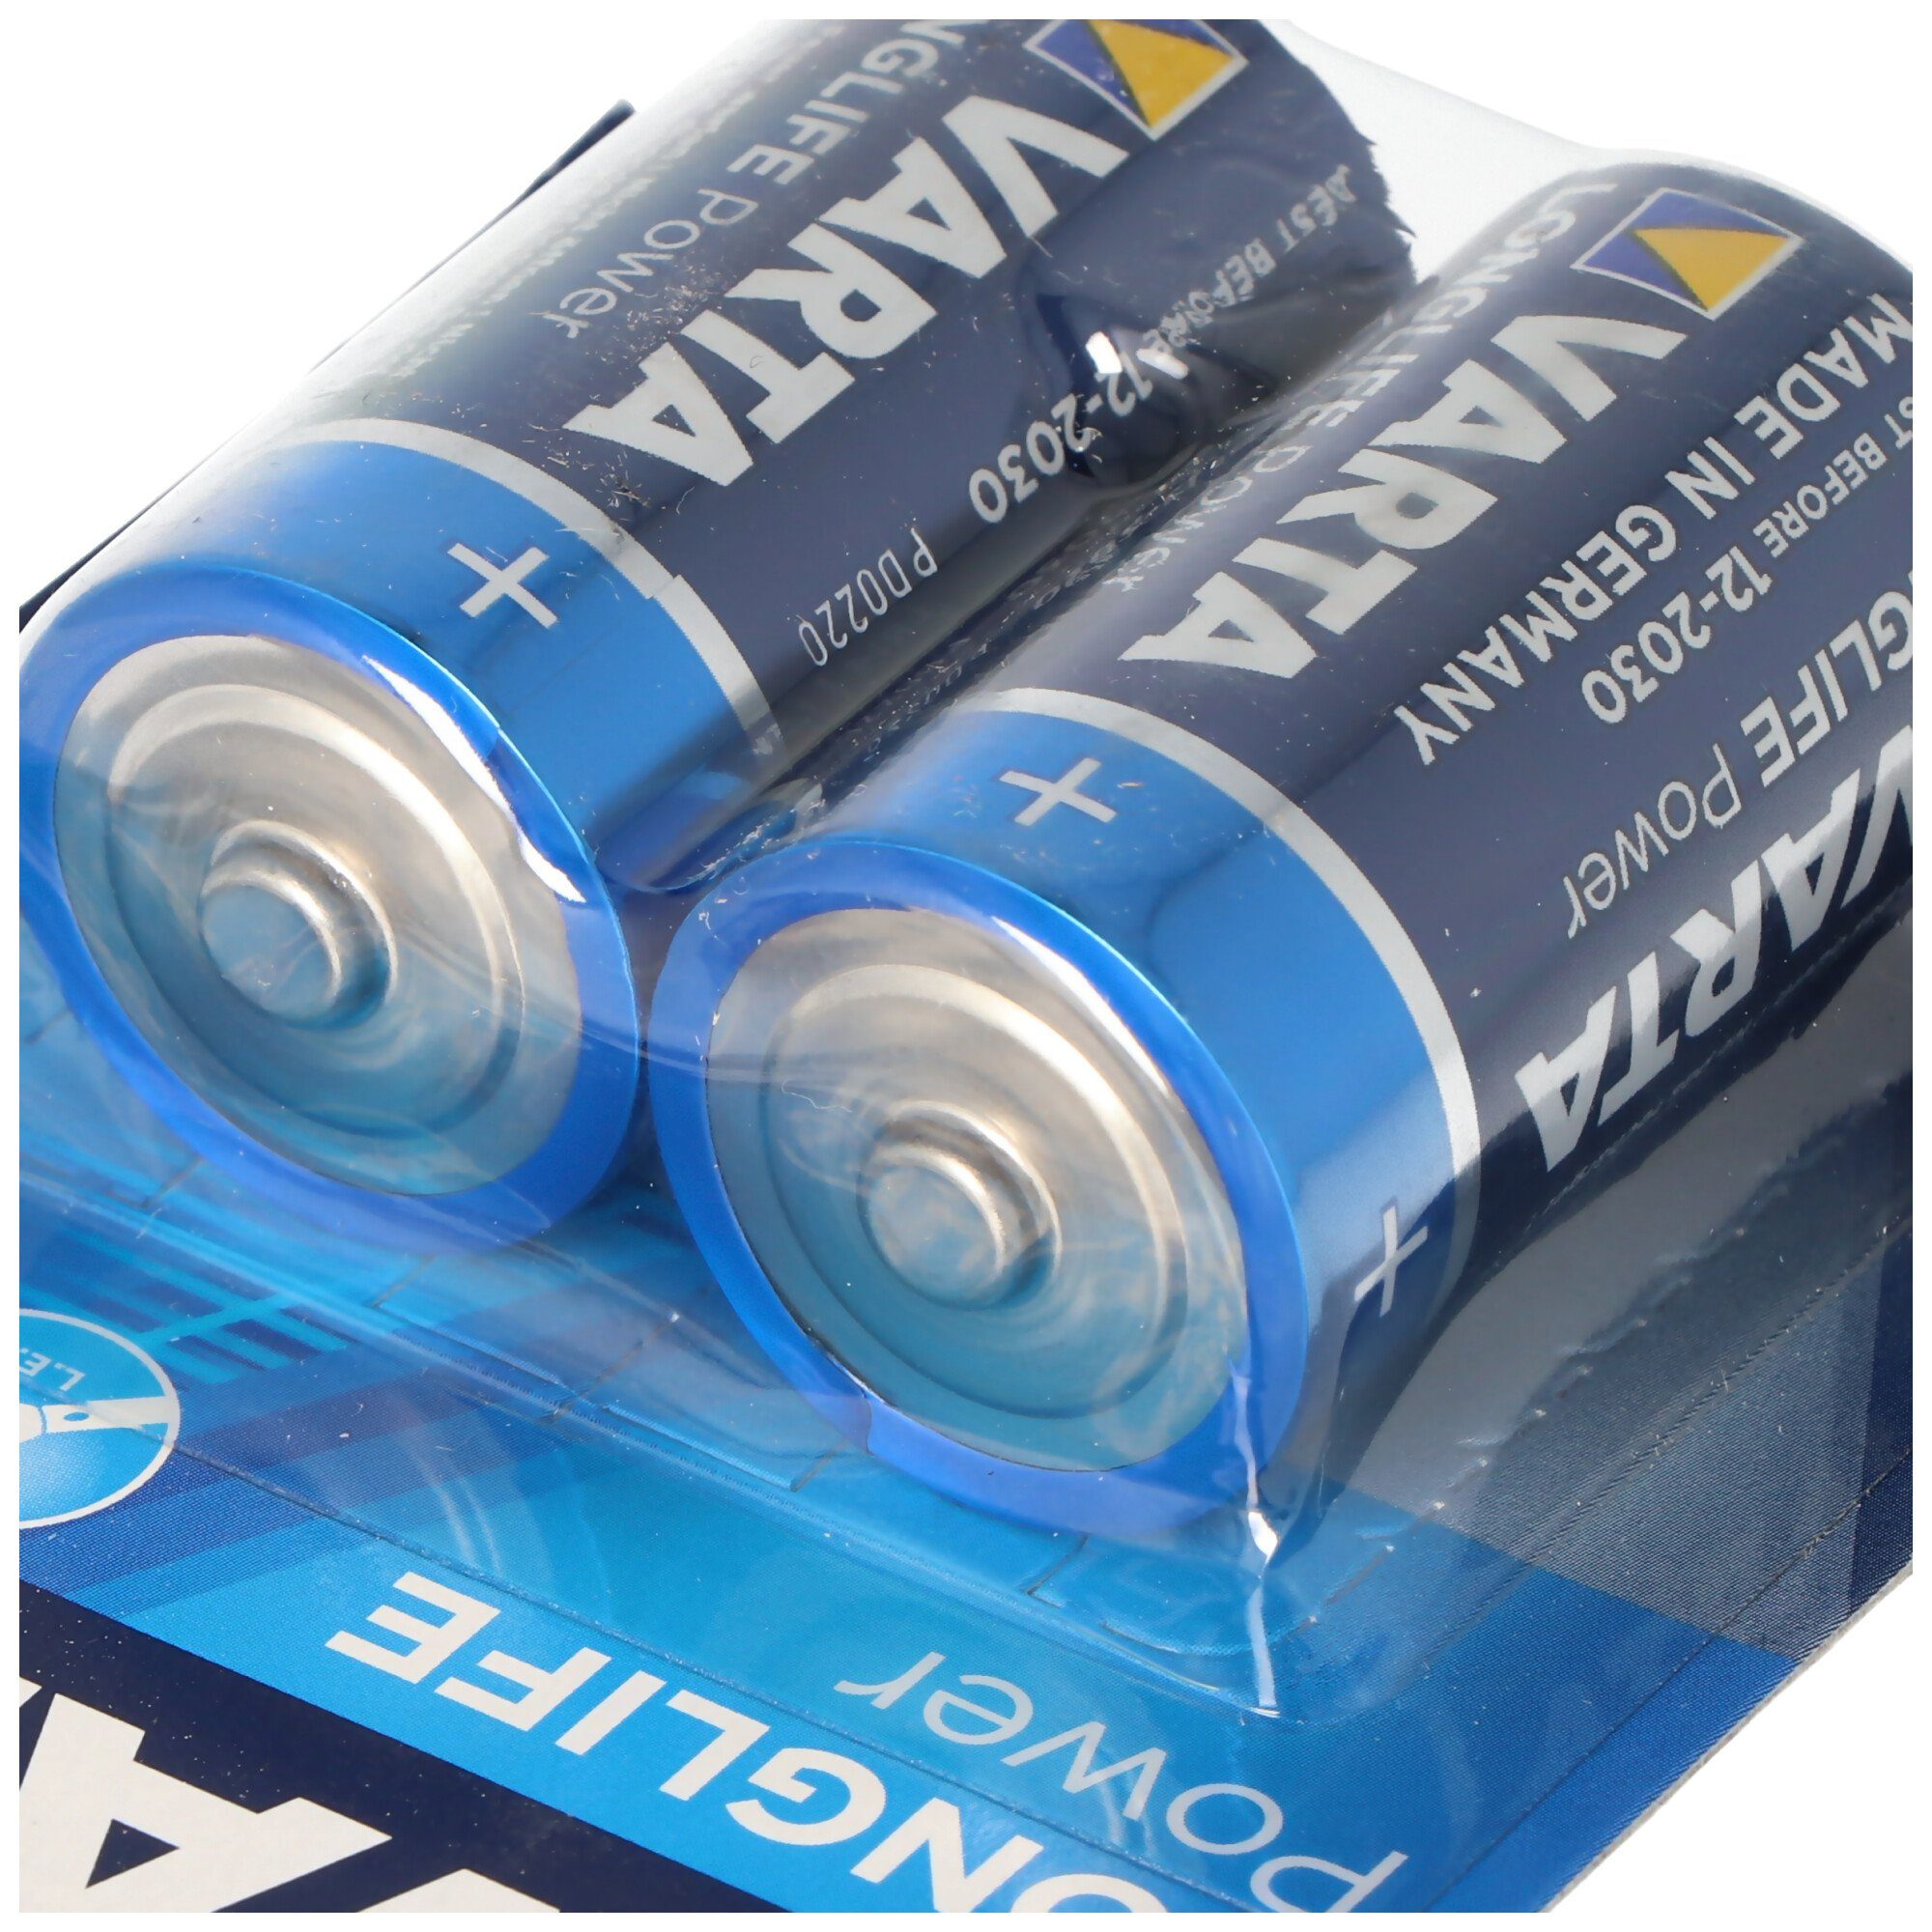 Power C Baby Batterie Varta Energy) Longlife (ehem. 10x Batterie, High V) VARTA 2er 4914 (1,5